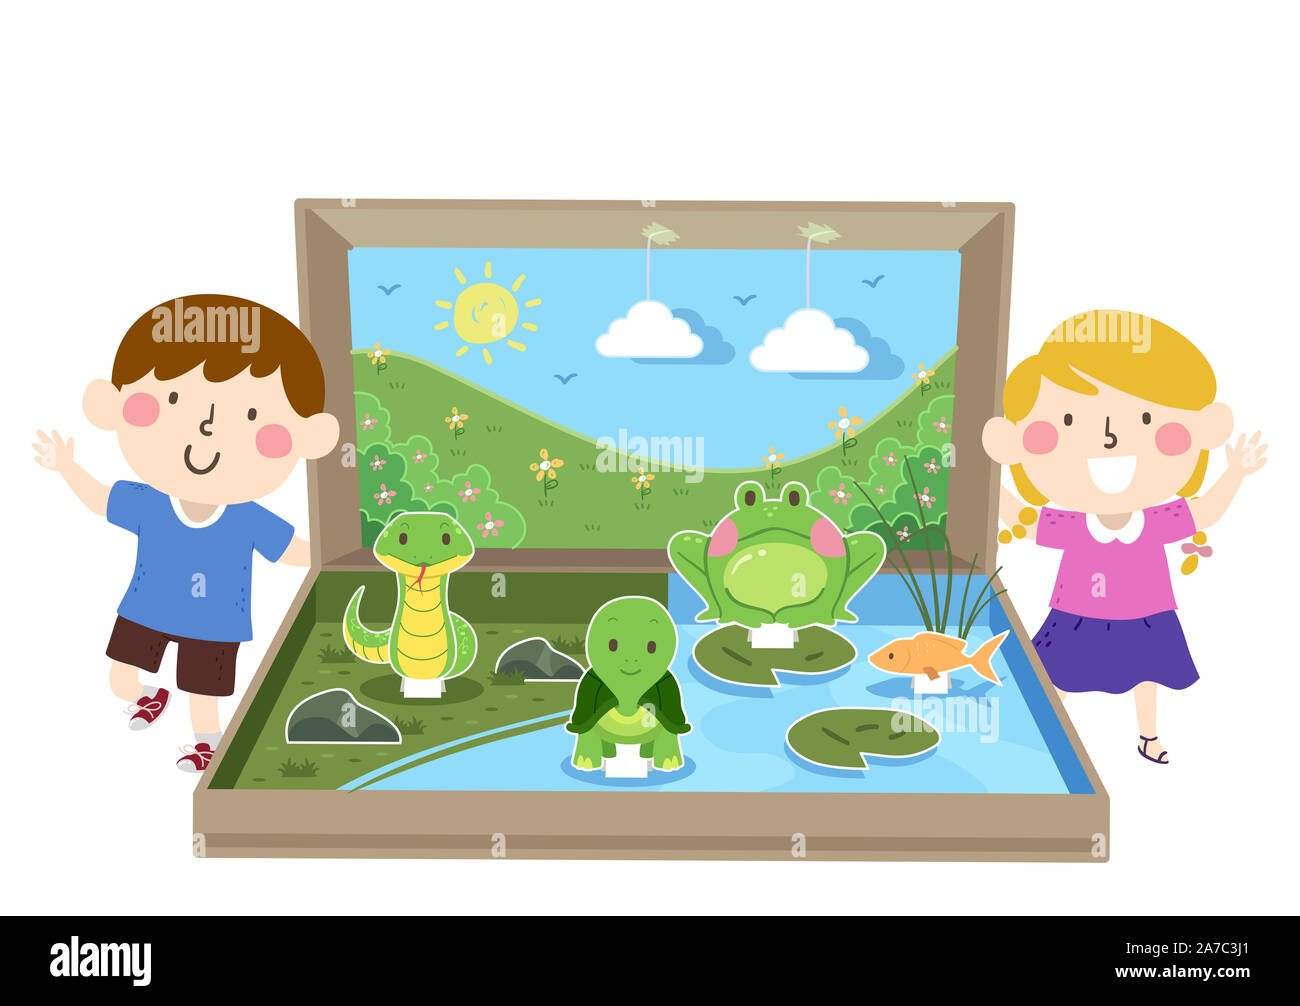 Illustrazione di bambini con un nuovo ecosistema acquatico diorama con una rana, tartarughe, pesci e Snake Foto Stock